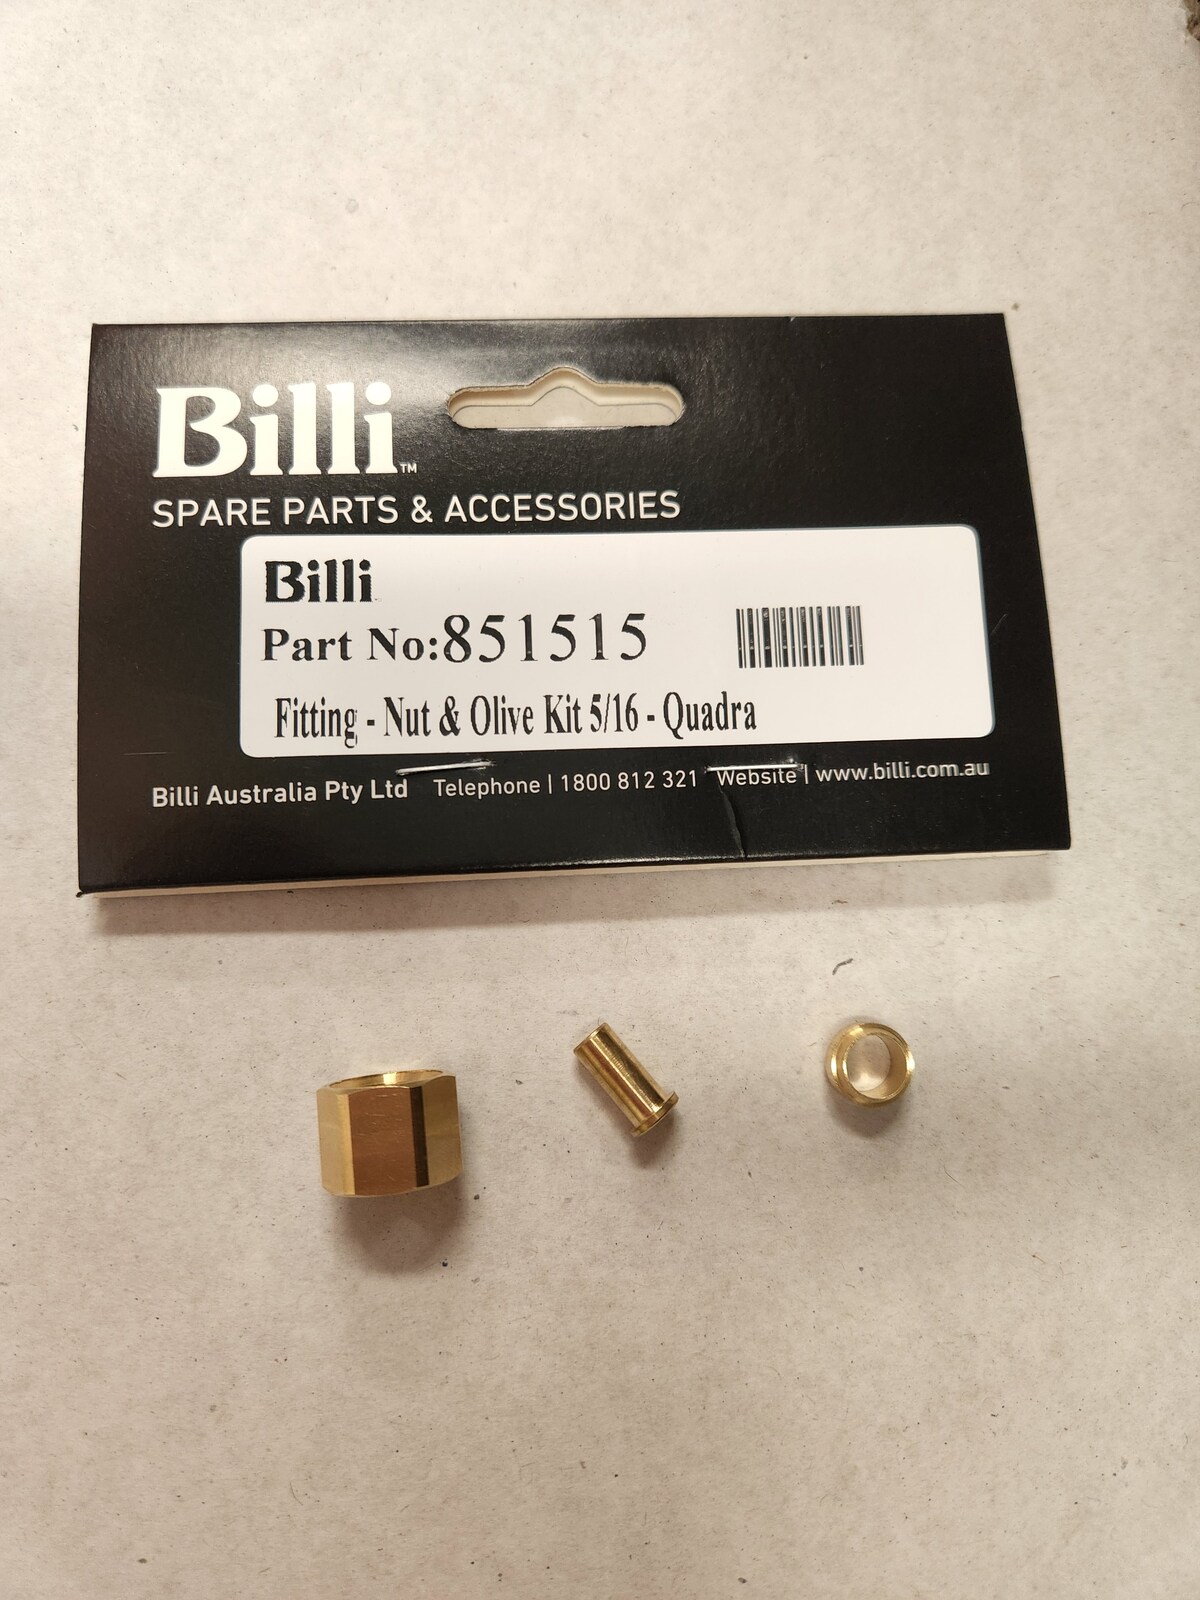 851515 Billi Fitting - Nut & Olive Kit 5/16- Quadra